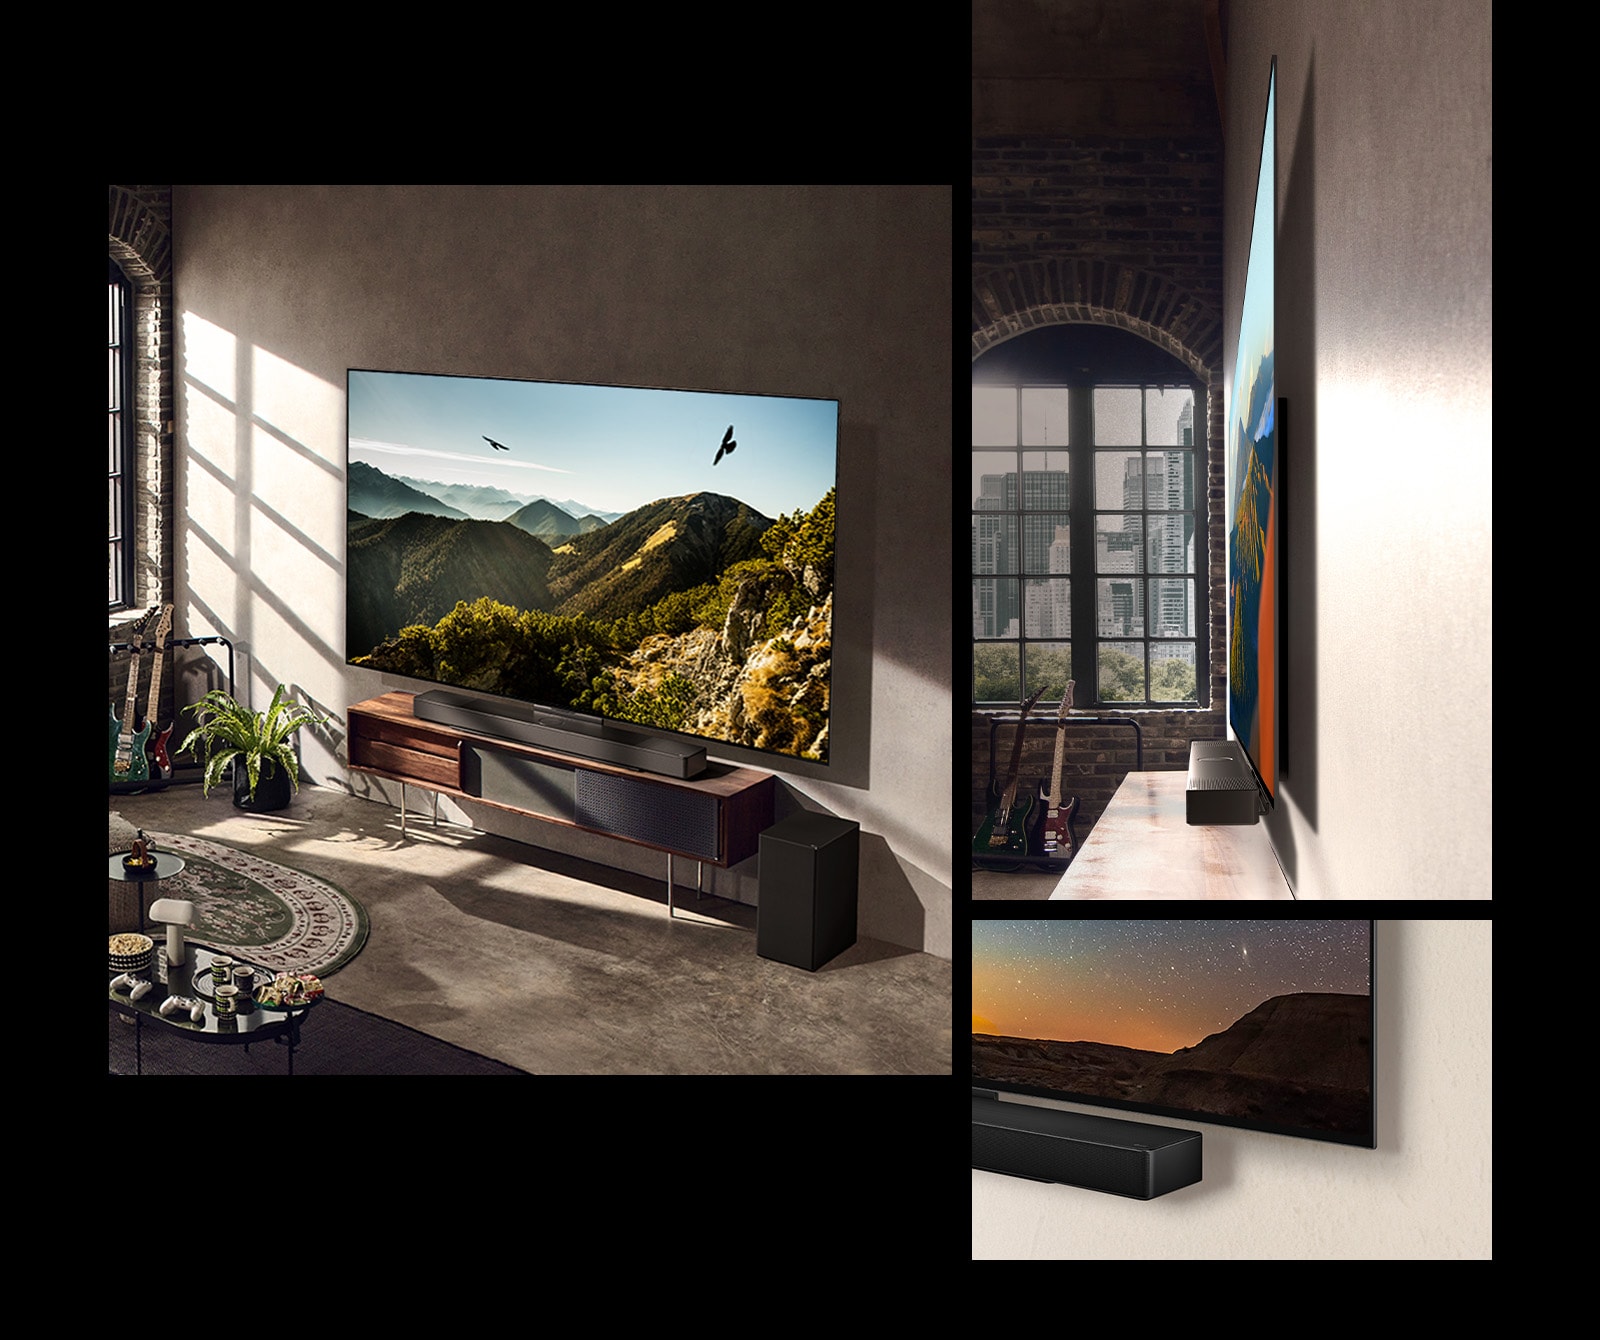 Een afbeelding van de LG OLED C3 met een soundbar aan de muur in een artistieke kamer. Een zijaanzicht van de dunne afmetingen van de LG OLED C3 voor een raam met uitzicht op een stadsgezicht. De onderste hoek van LG OLED C3 en soundbar.